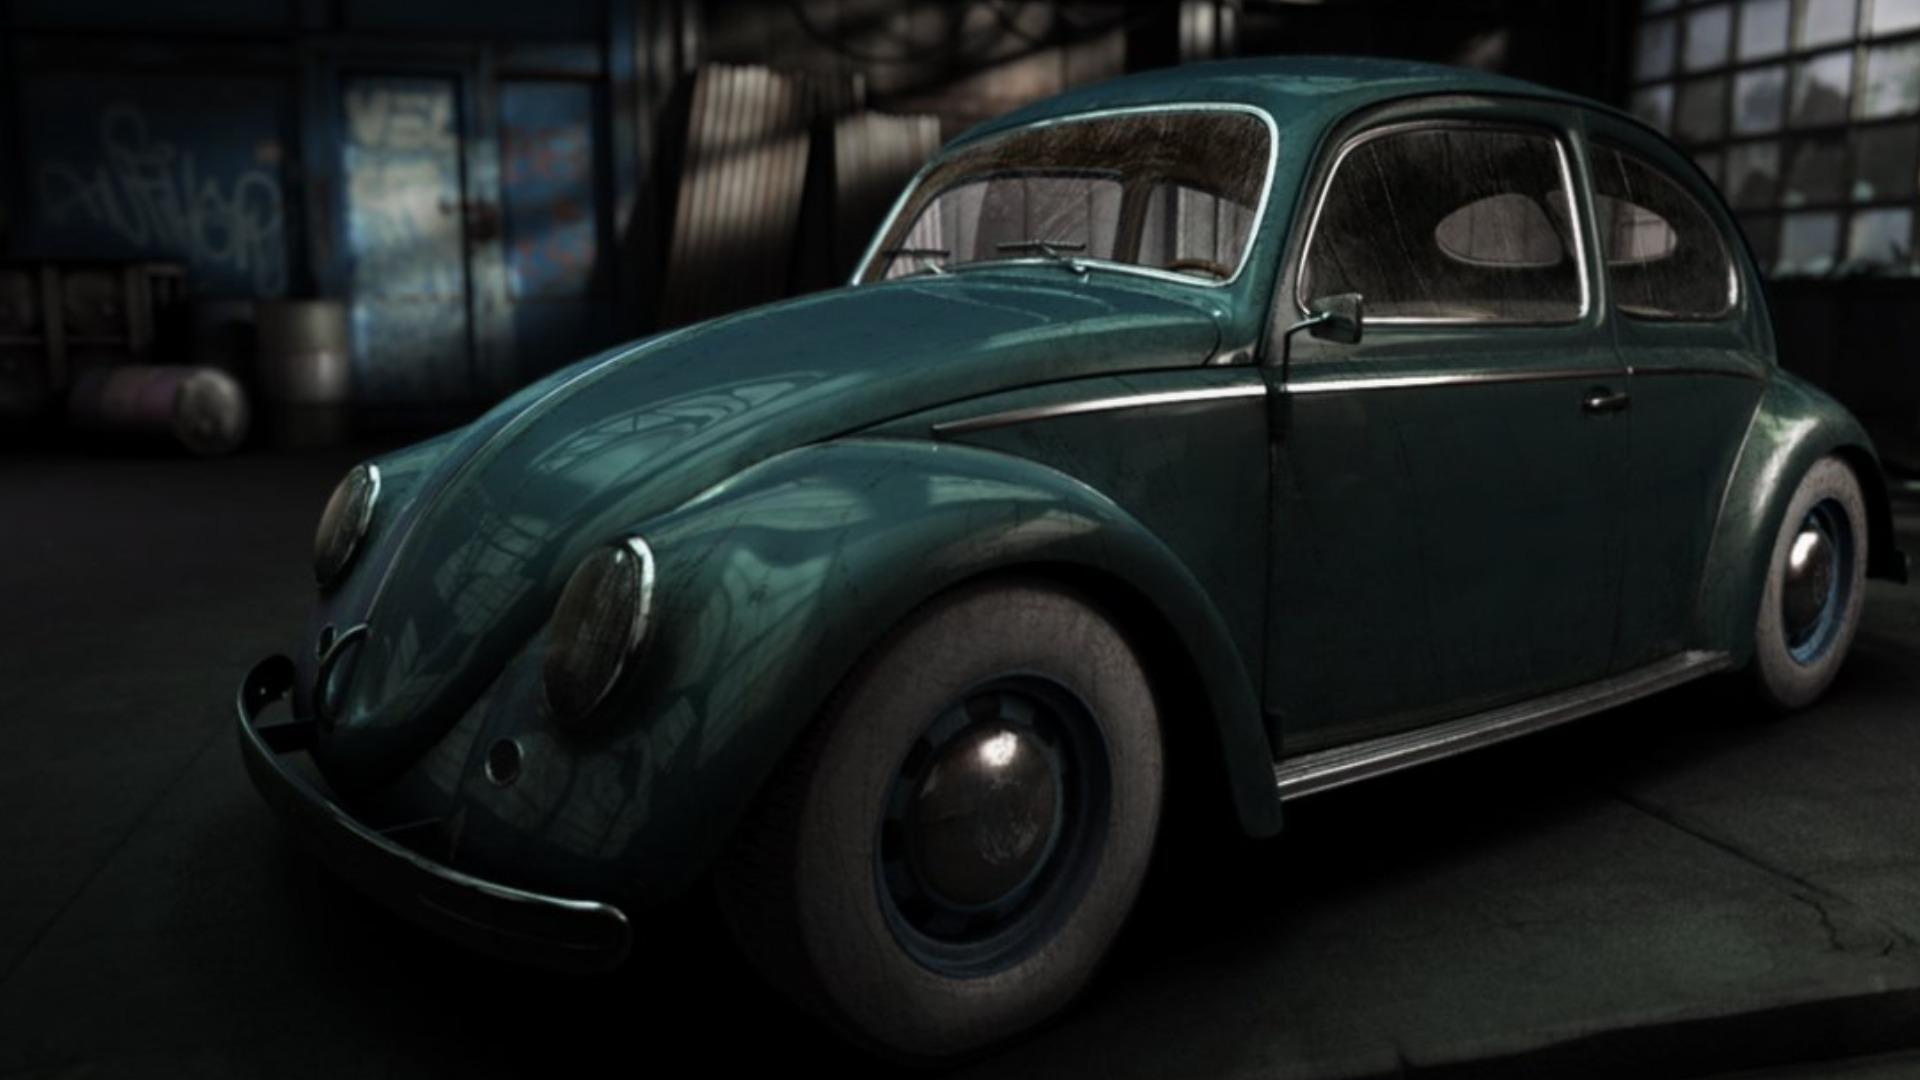 Descarga gratuita de fondo de pantalla para móvil de Volkswagen, Vehículos.